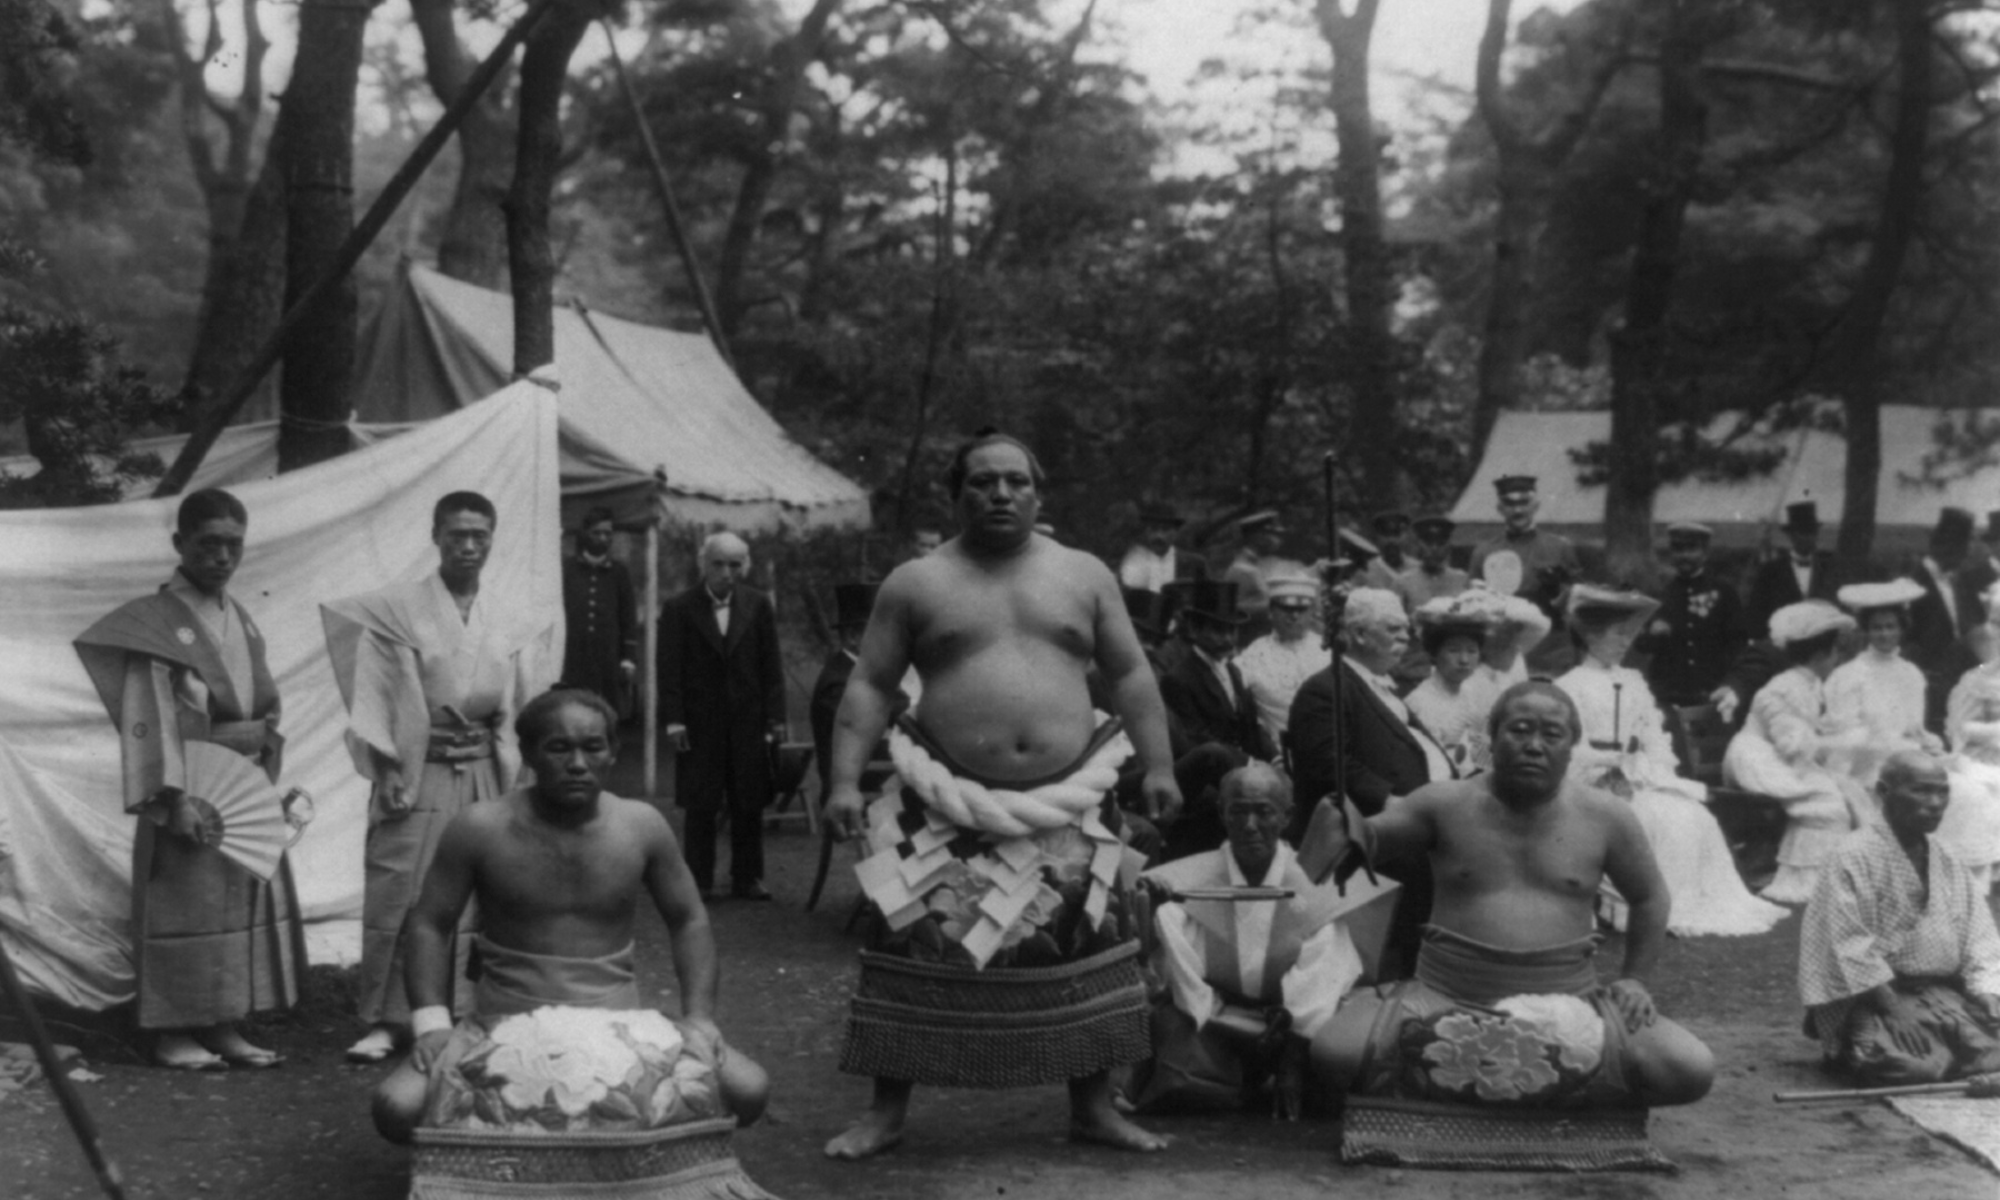 oude zwart-witfoto van sumoworstelaars